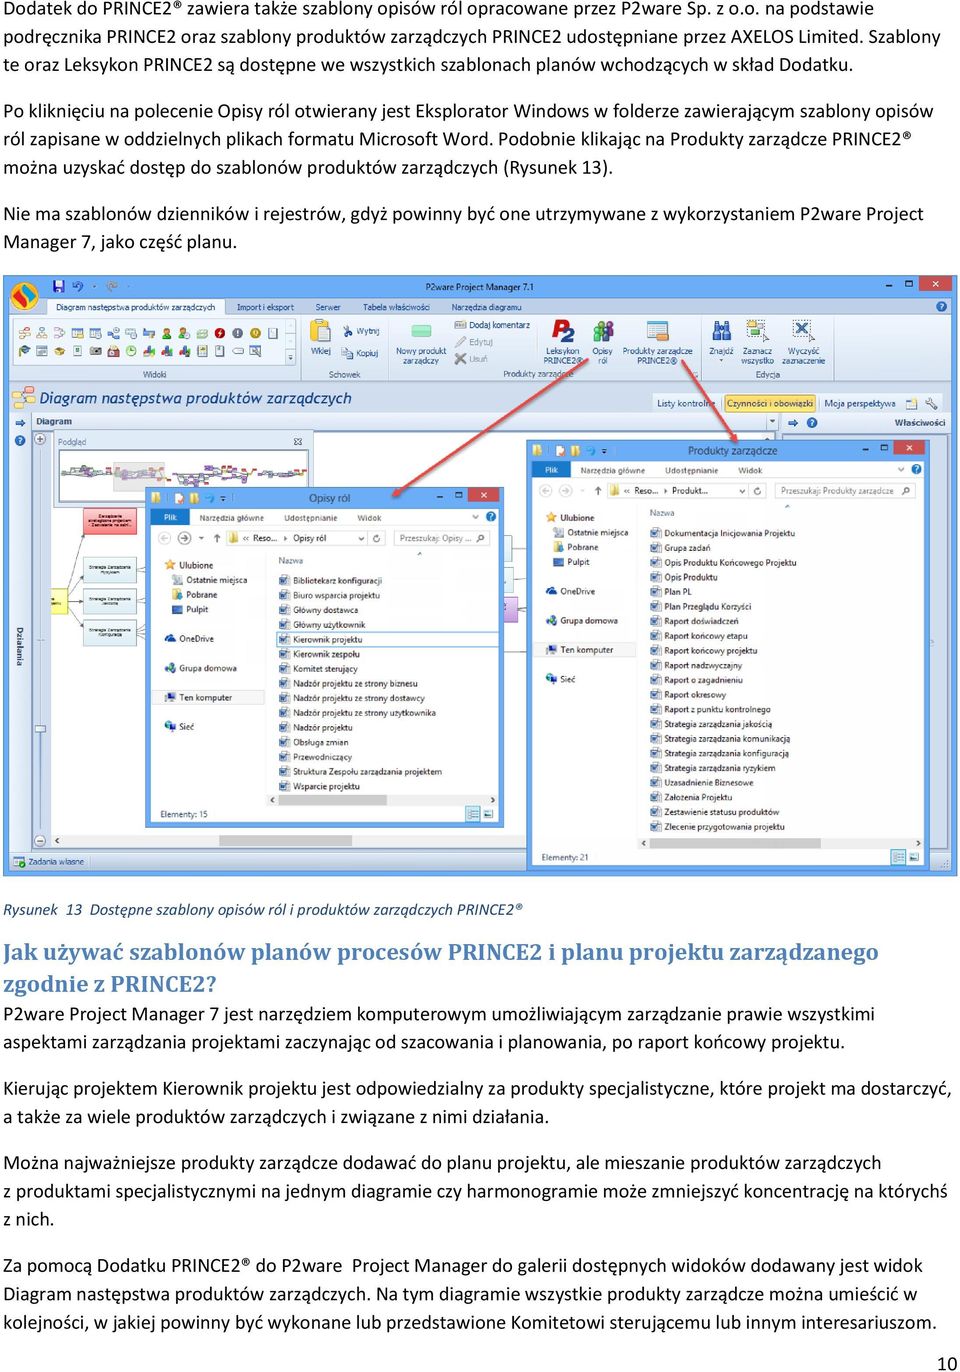 Po kliknięciu na polecenie Opisy ról otwierany jest Eksplorator Windows w folderze zawierającym szablony opisów ról zapisane w oddzielnych plikach formatu Microsoft Word.